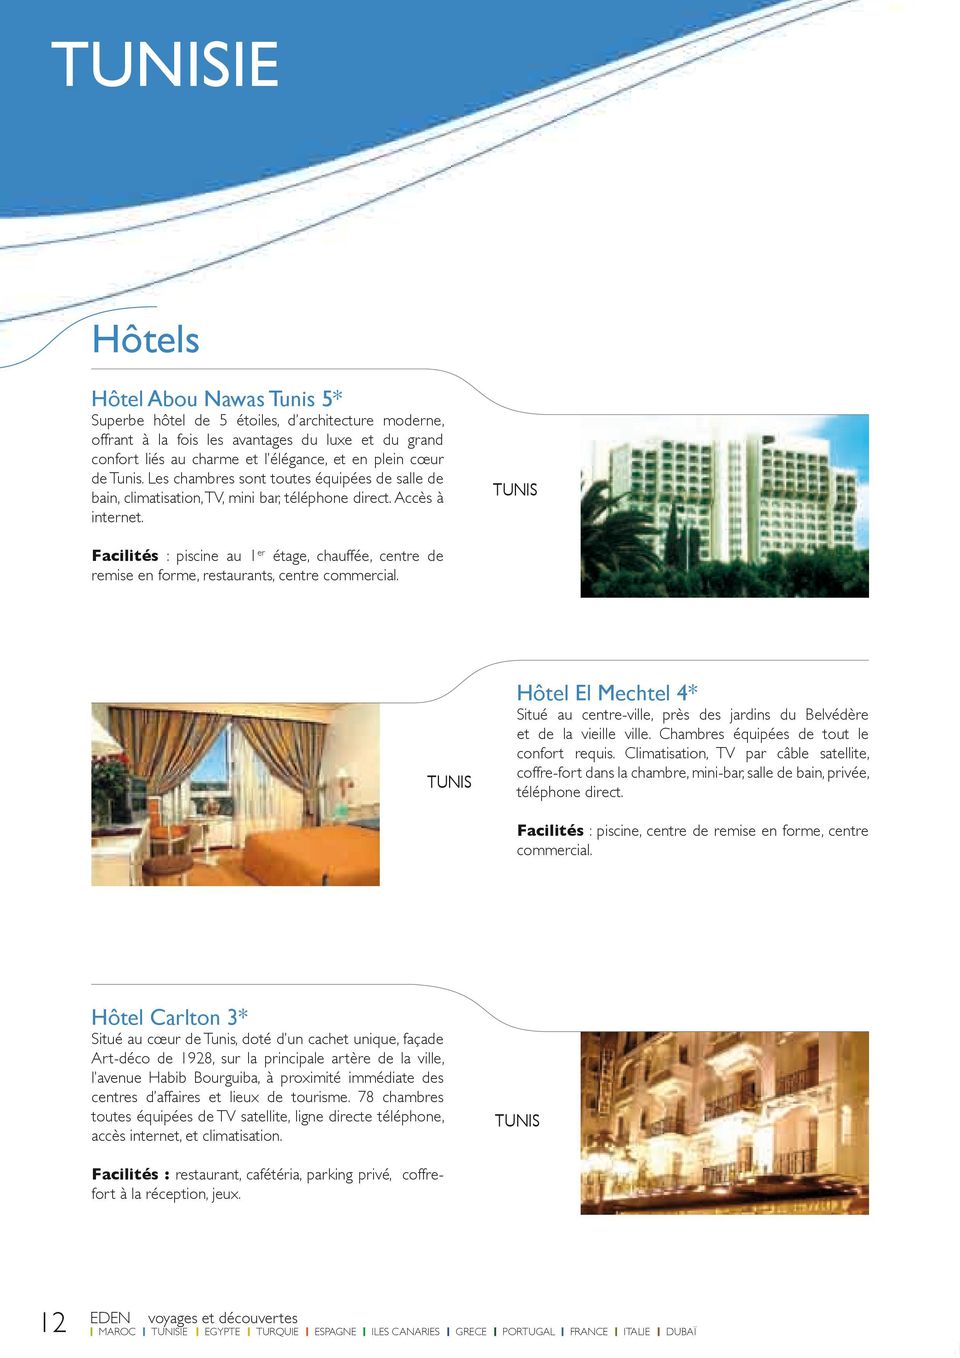 TUNIS Facilités : piscine au 1 er étage, chauffée, centre de remise en forme, restaurants, centre commercial.